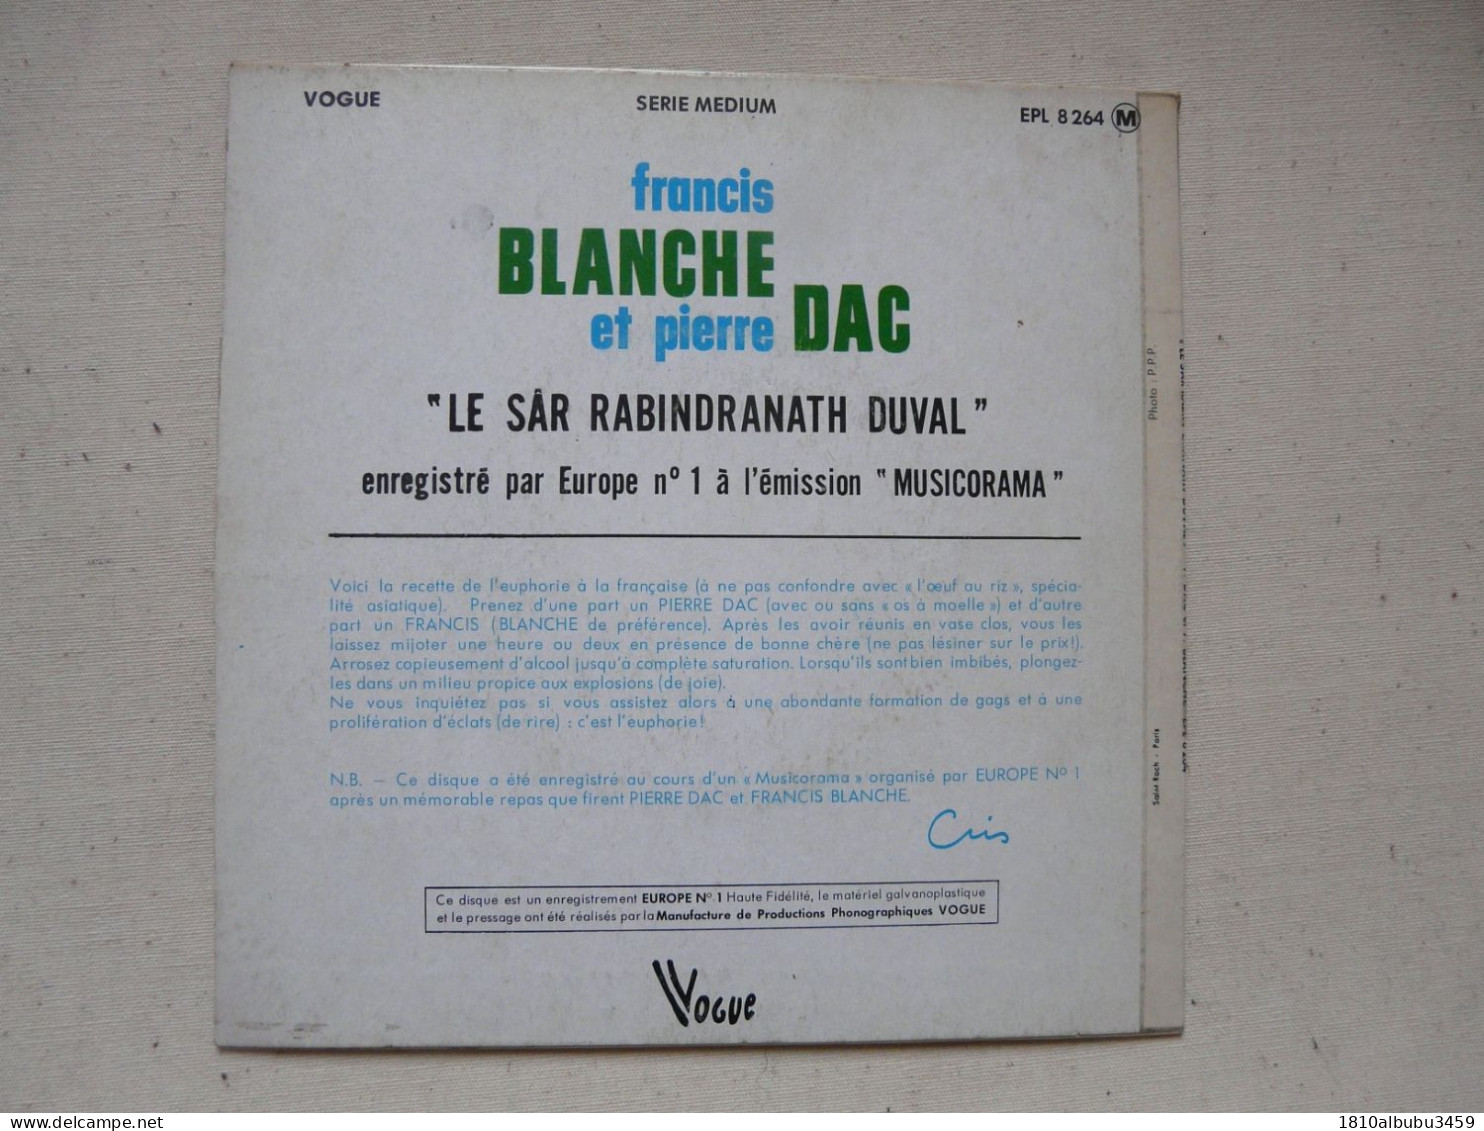 VINYLE - 45 T : FRANCIS BLANCHE & PIERRE DAC - "Le SAR RABIN DRANATH DUVAL" - Collectors